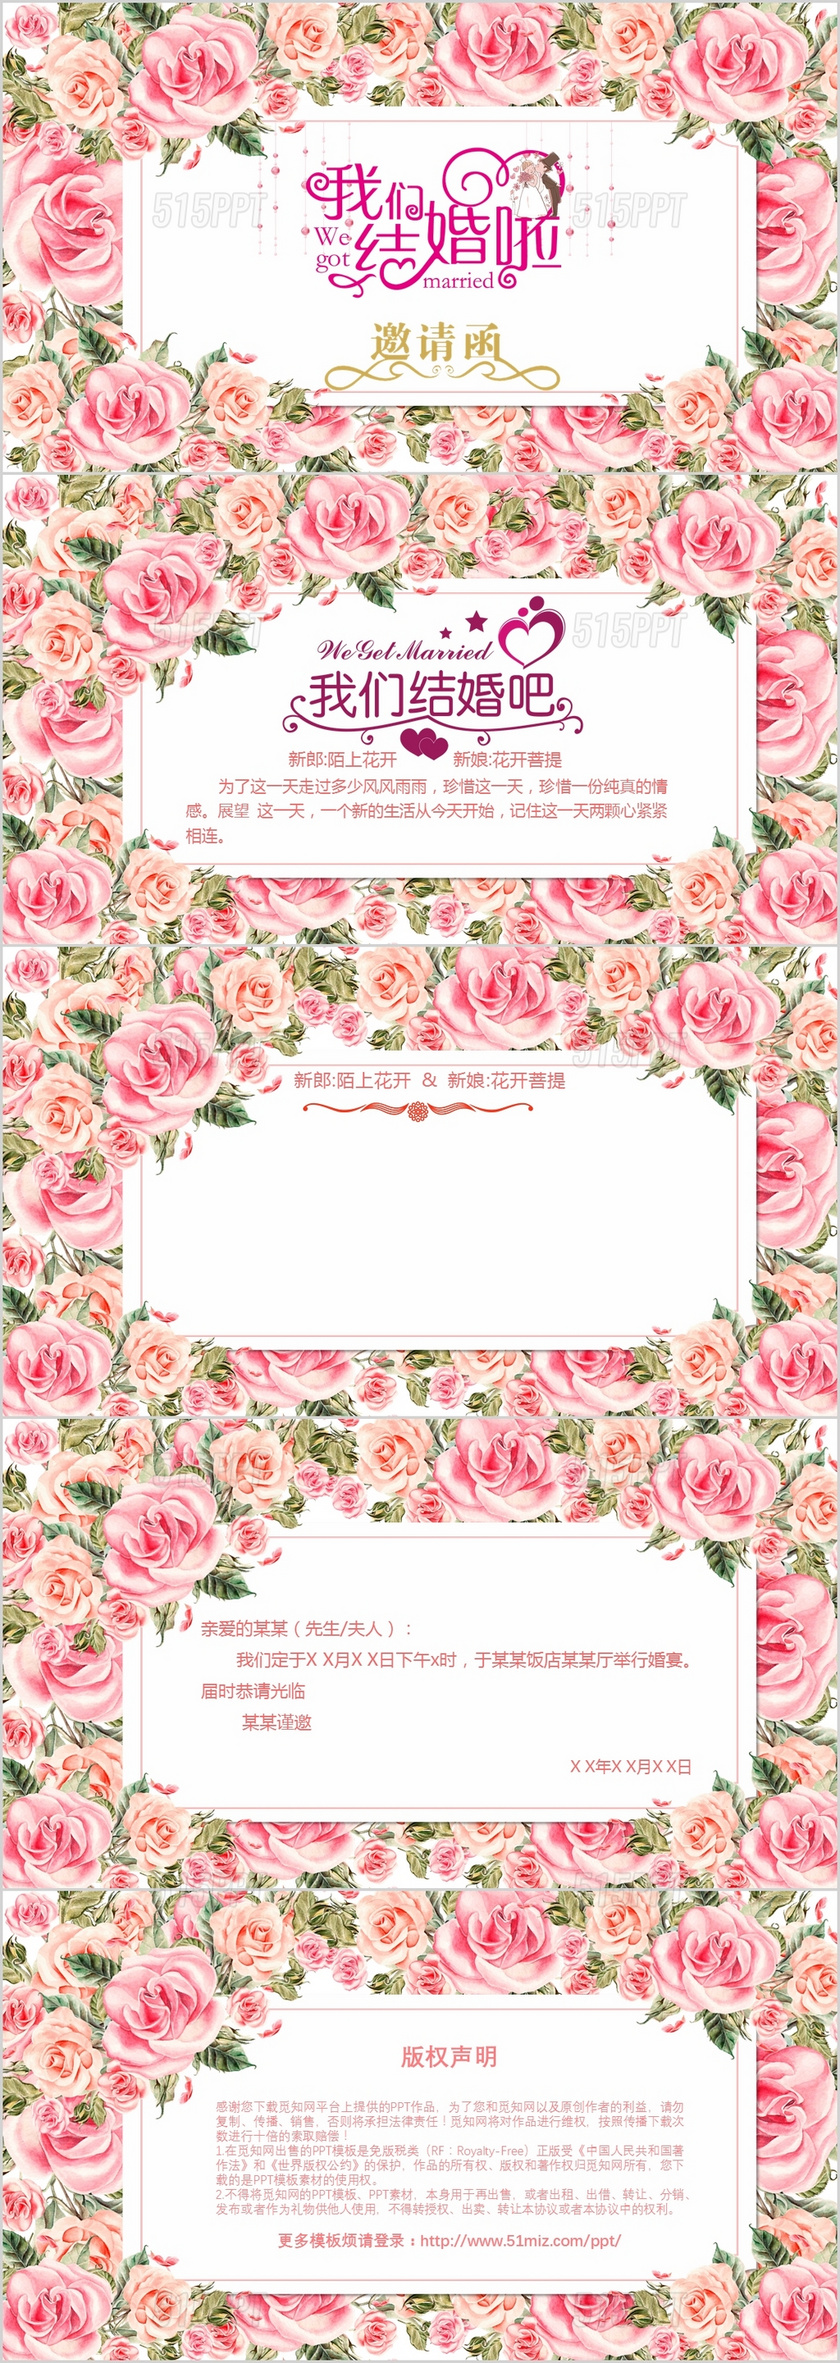 粉色花朵浪漫唯美婚礼邀请函PPT模板